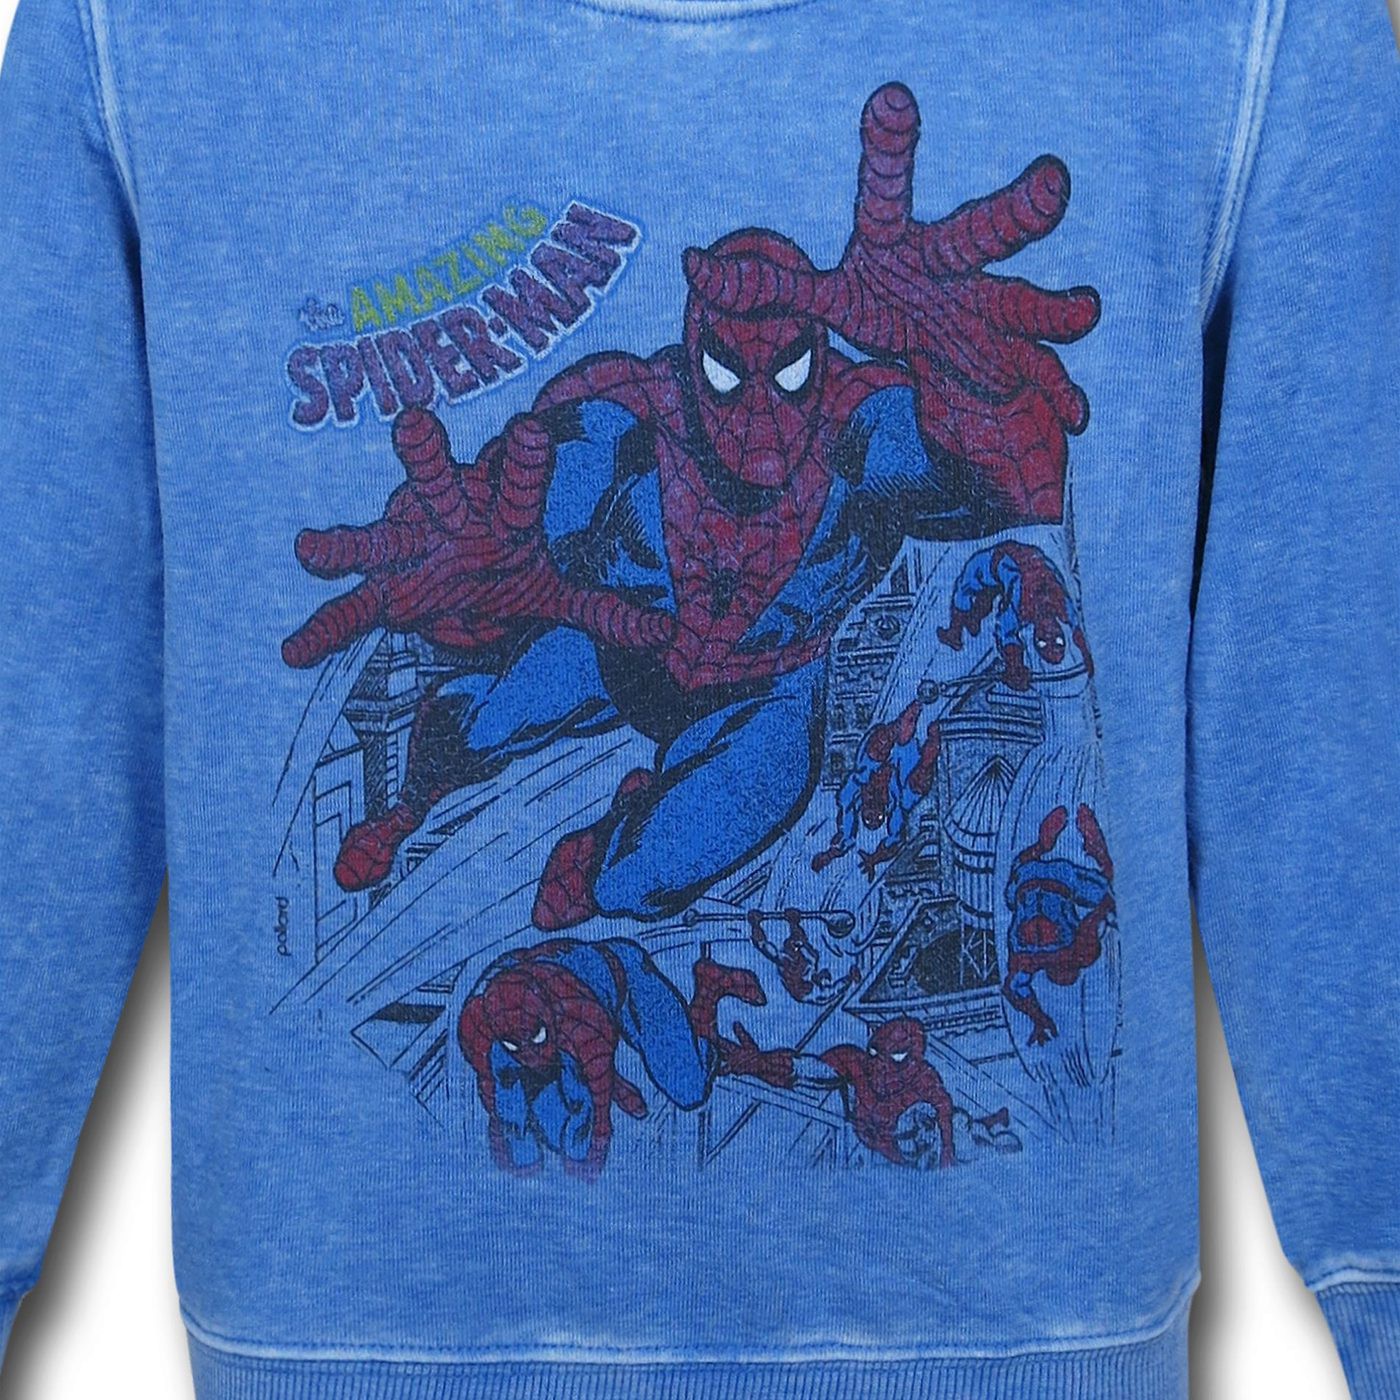 Spiderman Sixties Crew Neck Kids Sweatshirt